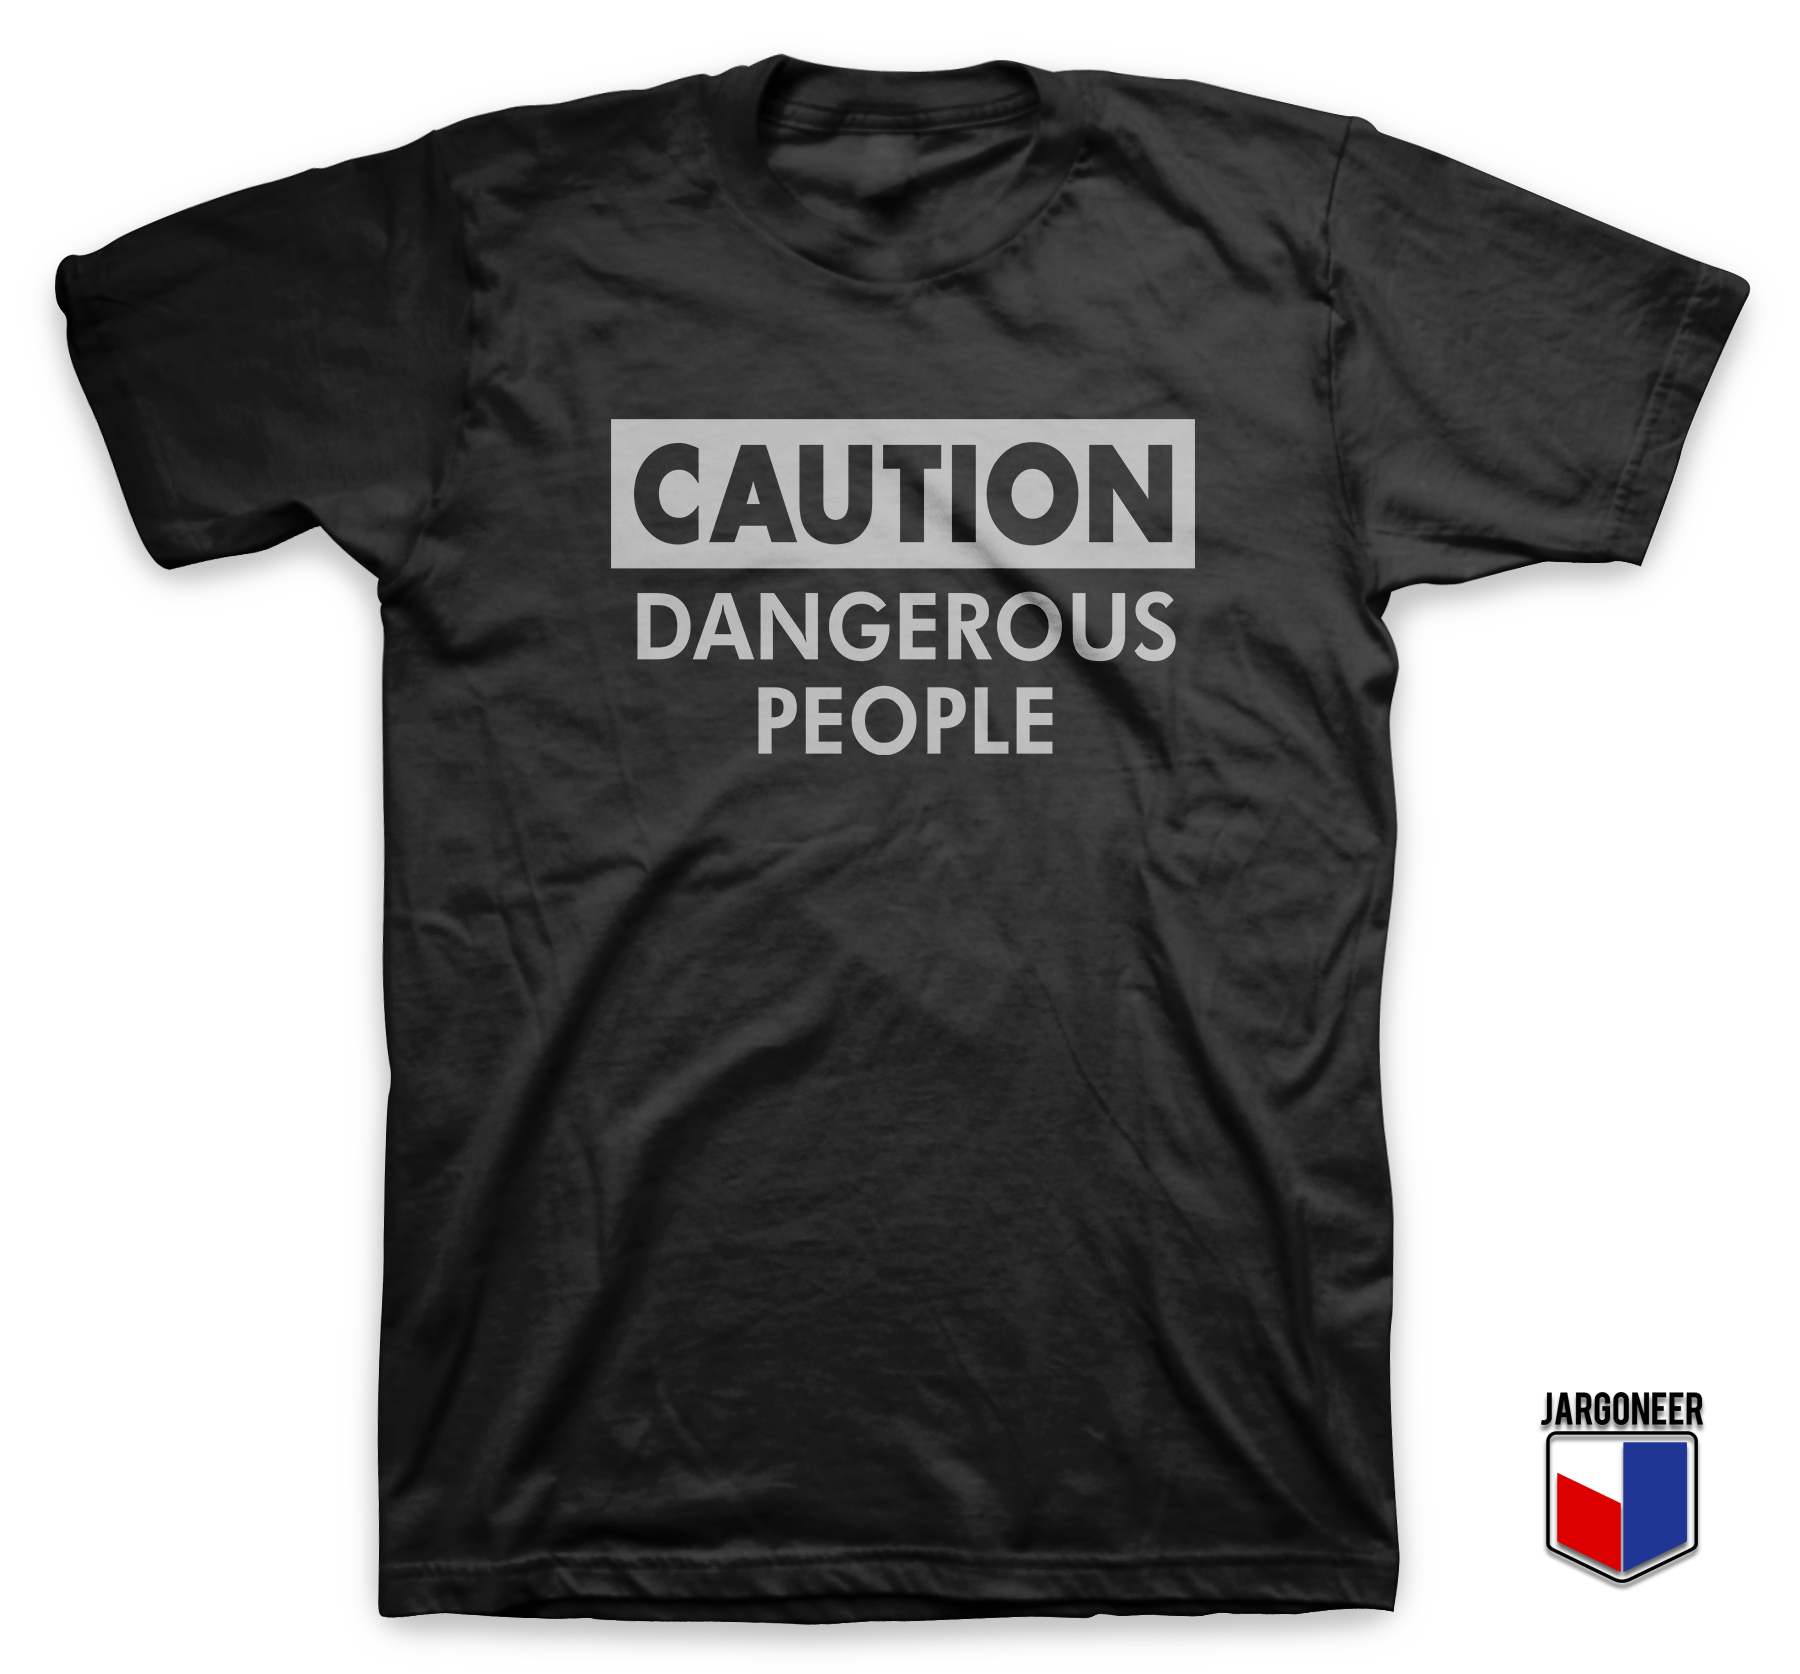 Caution Dangerous People Black T Shirt - Shop Unique Graphic Cool Shirt Designs